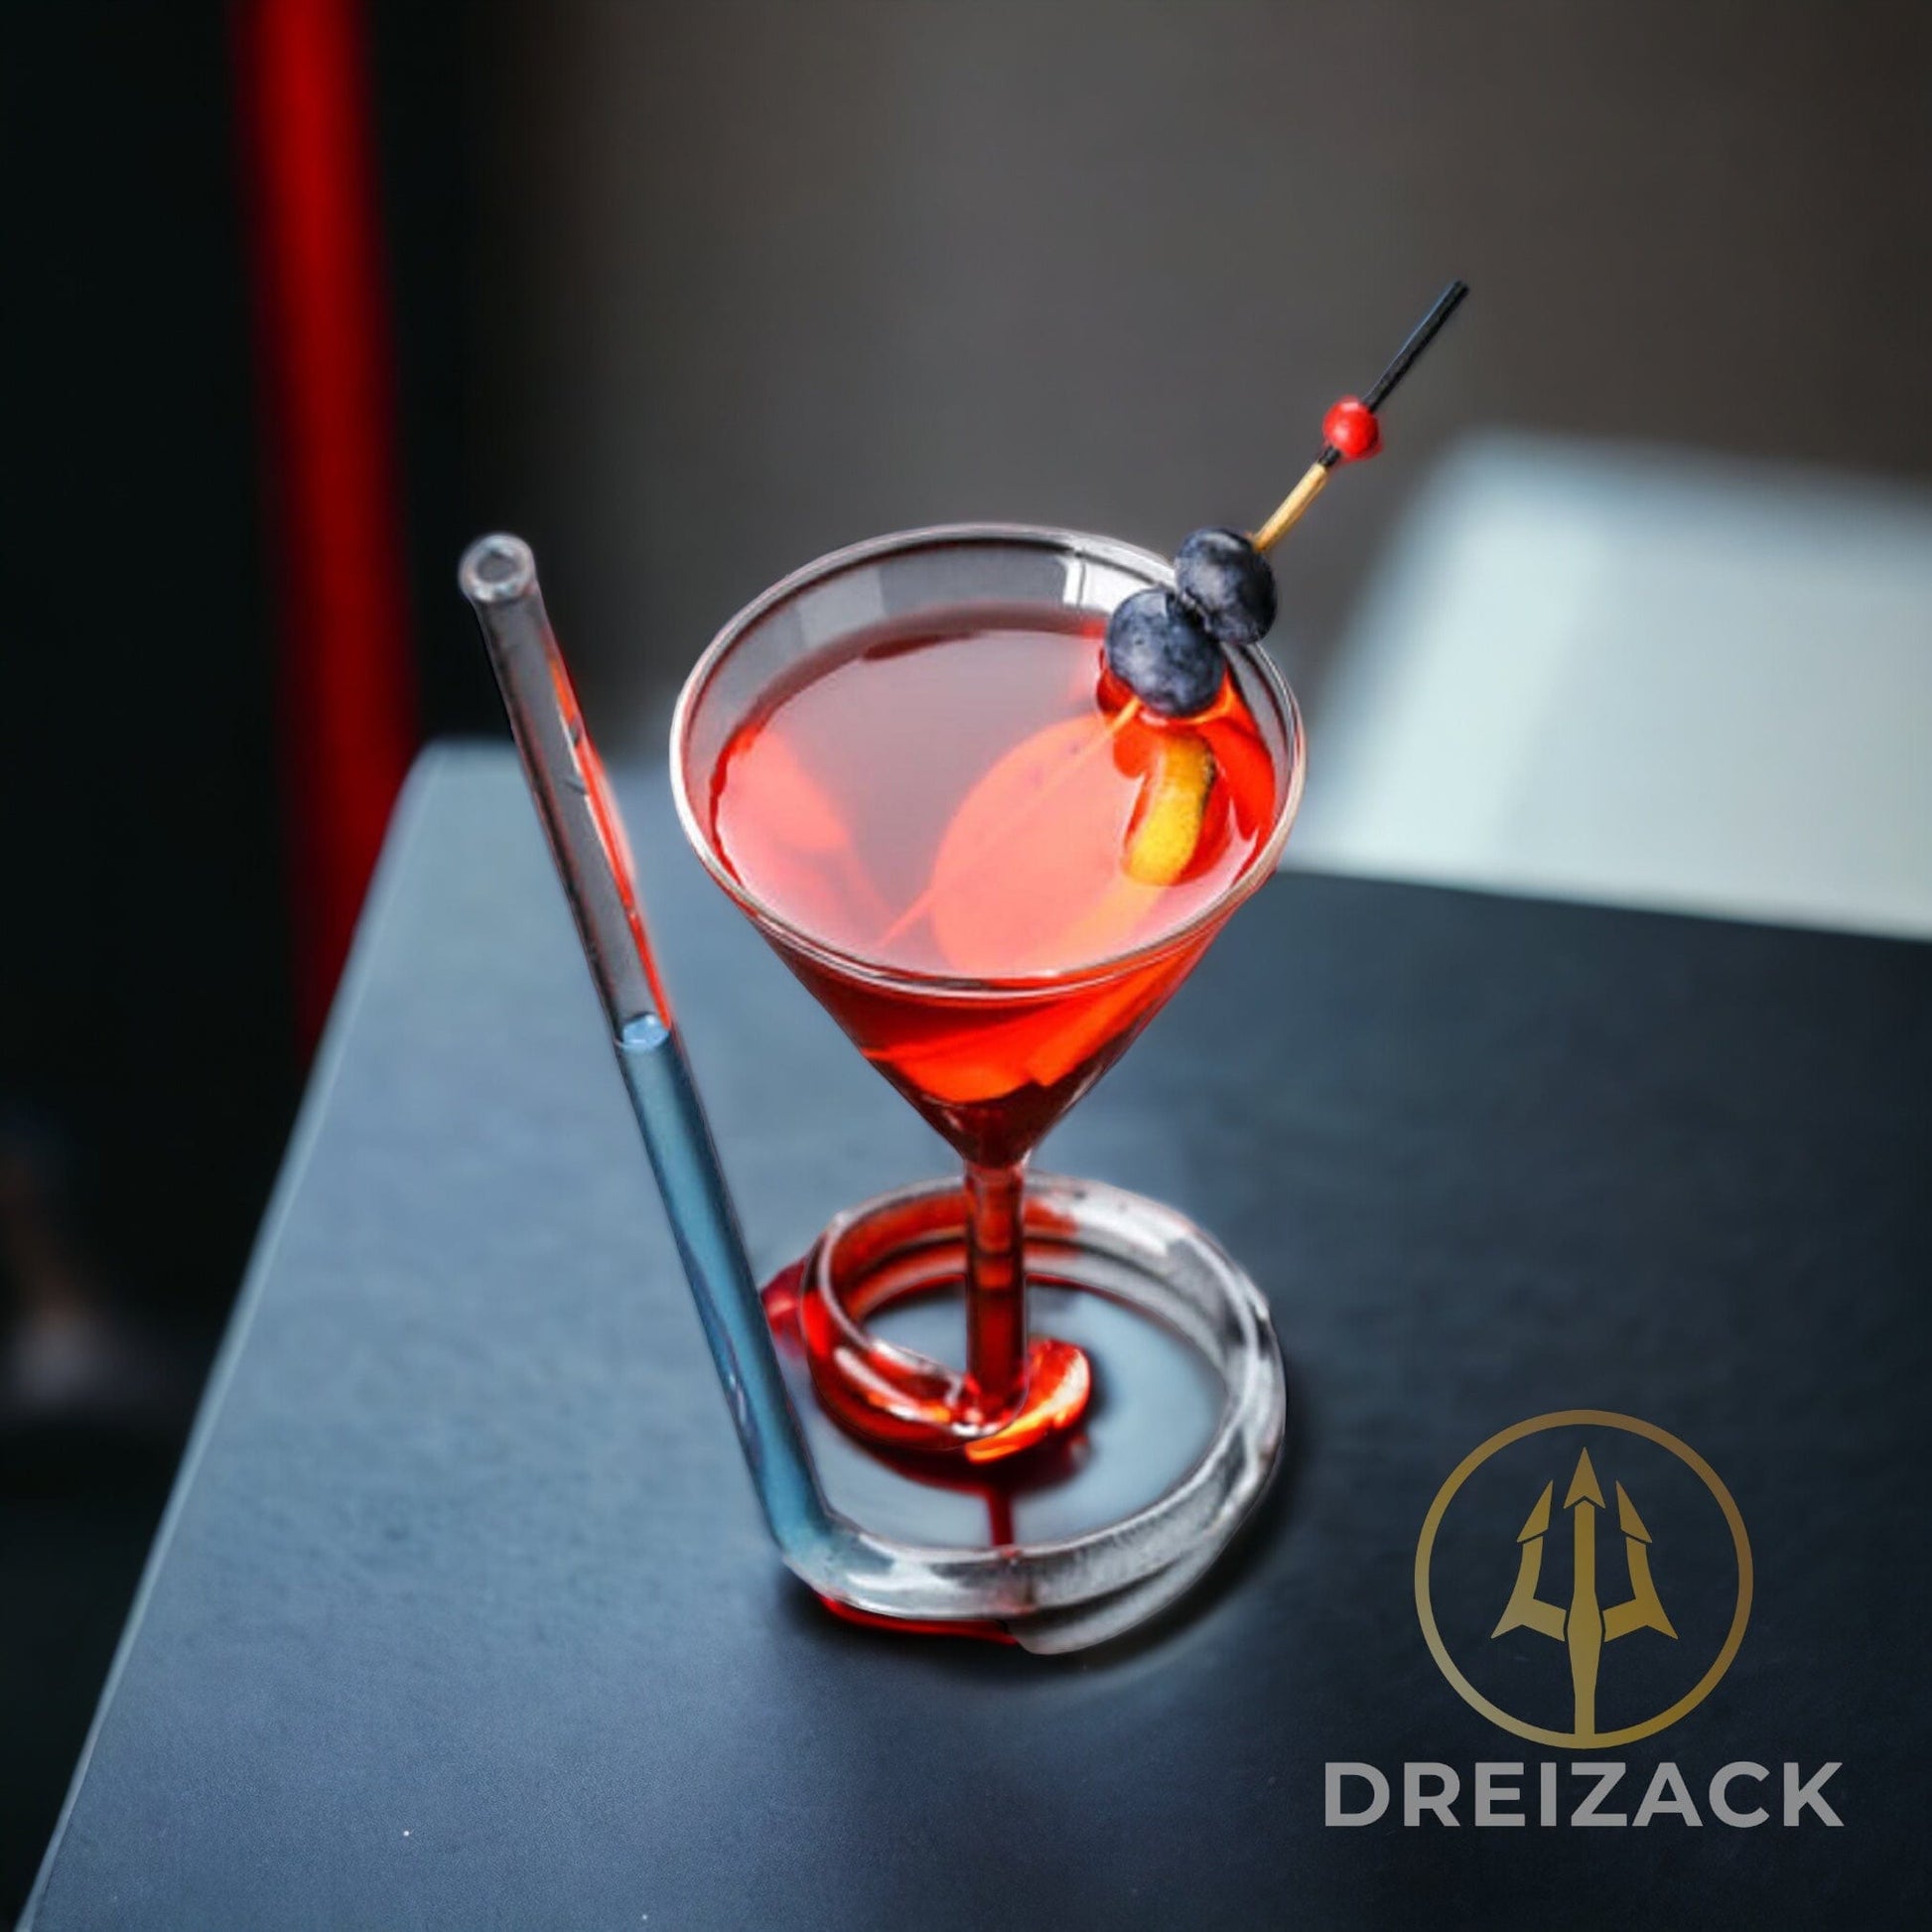 Cocktail Glas mit Trinkhalm Home Decor Dreizack oesterreich handgemachte geschenke in wien